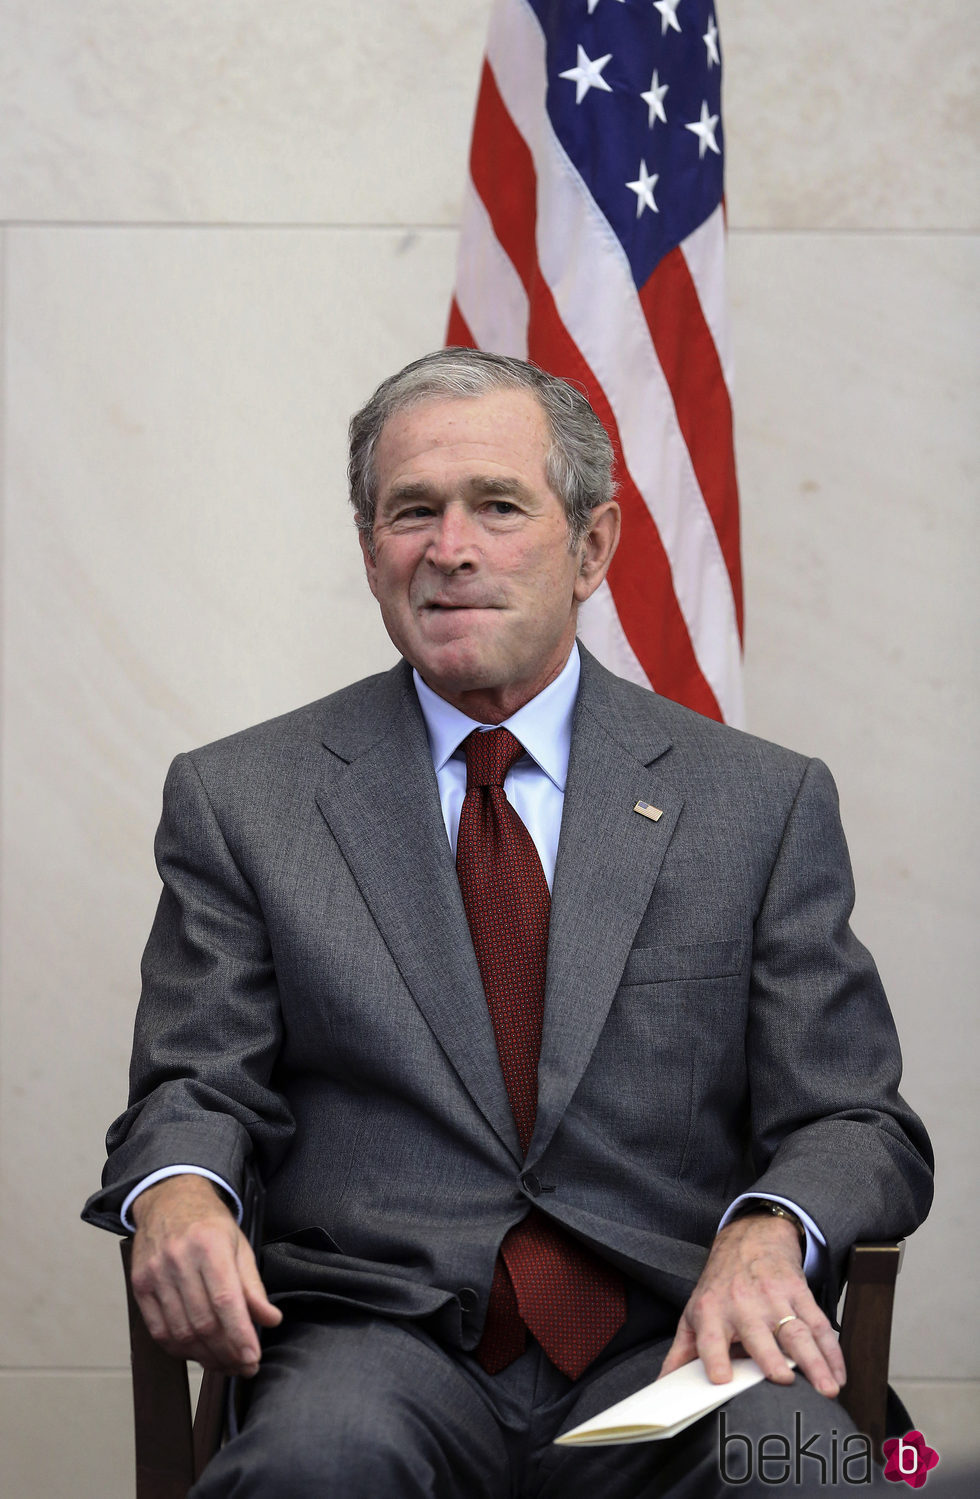 George W. Bush se sienta después de dar un discurso antes de una toma de posesión de los ciudadanos en EE.UU